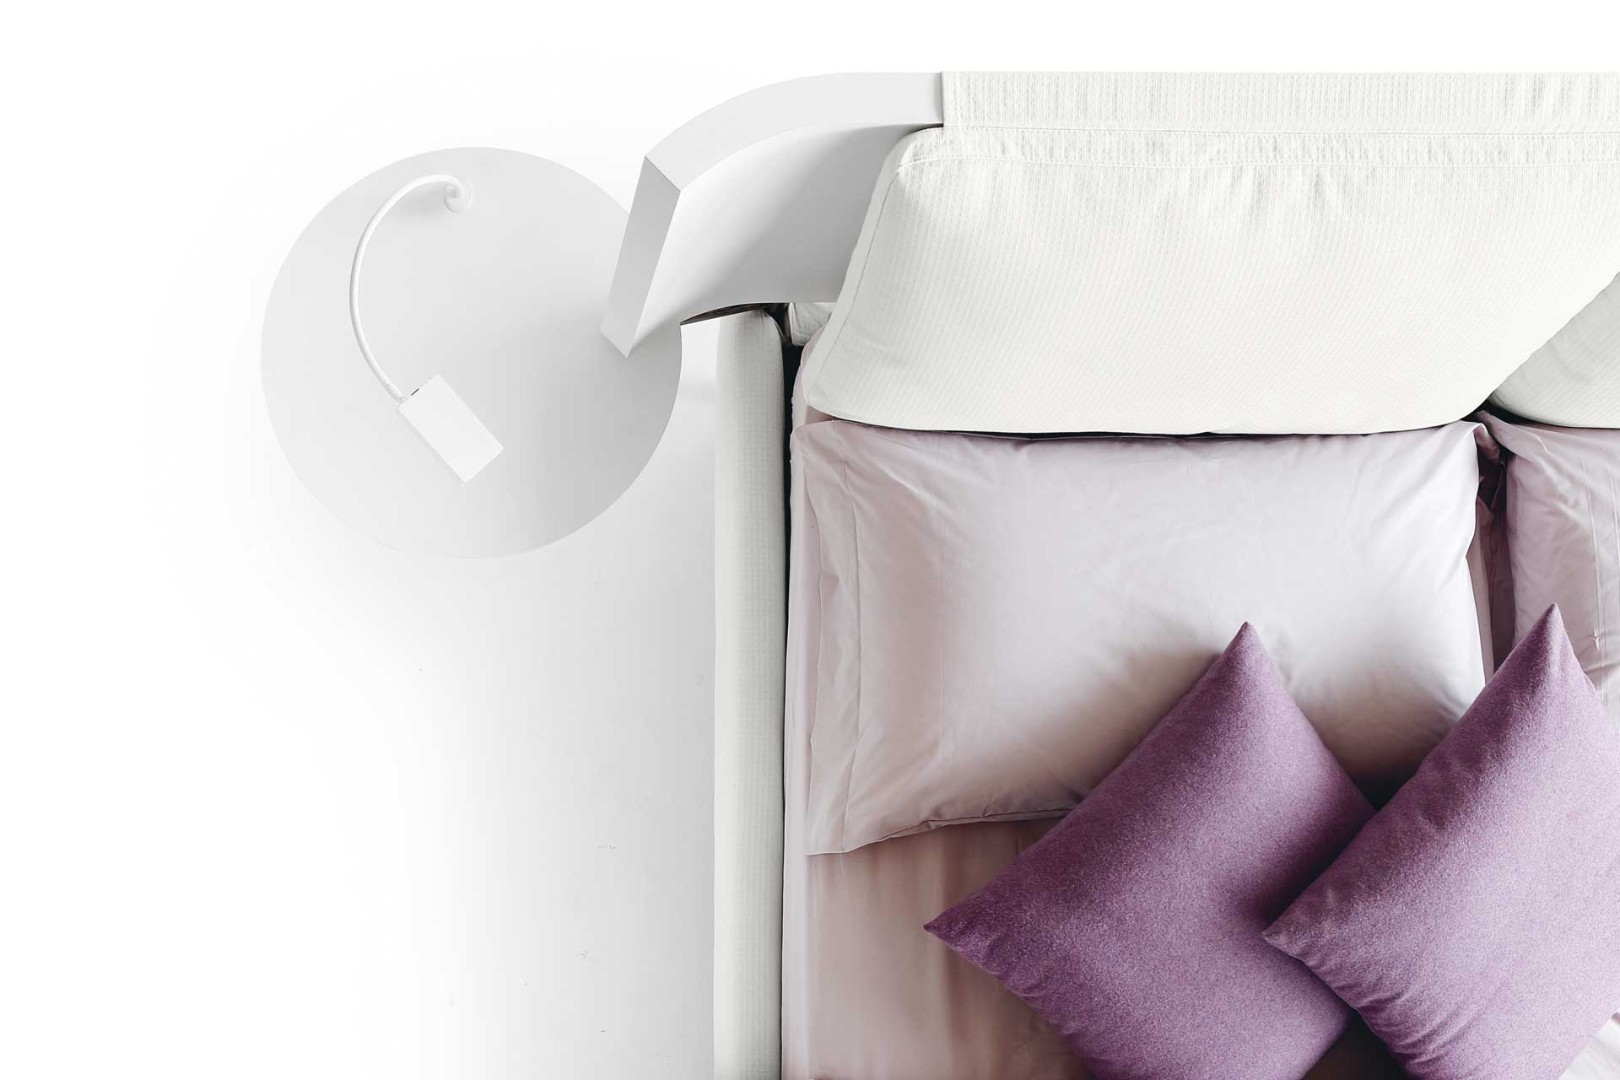 Кровать Hug 01 Pillows H17 — ₽, купить у официального дилера Nicolettihome